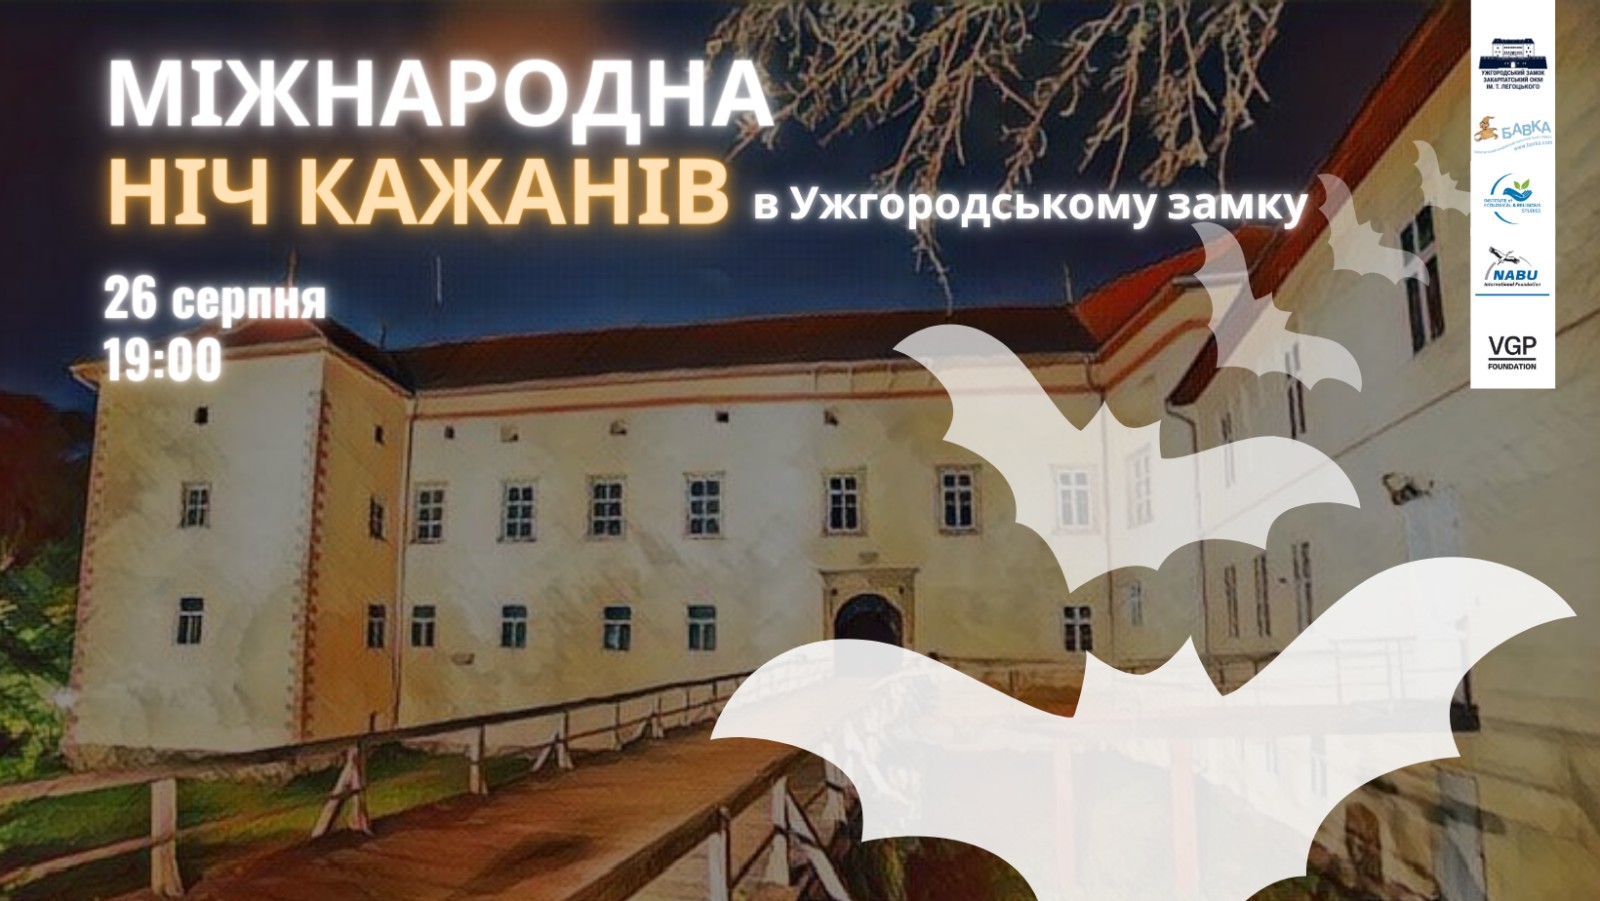 Міжнародну ніч кажанів проведуть в Ужгородському замку 